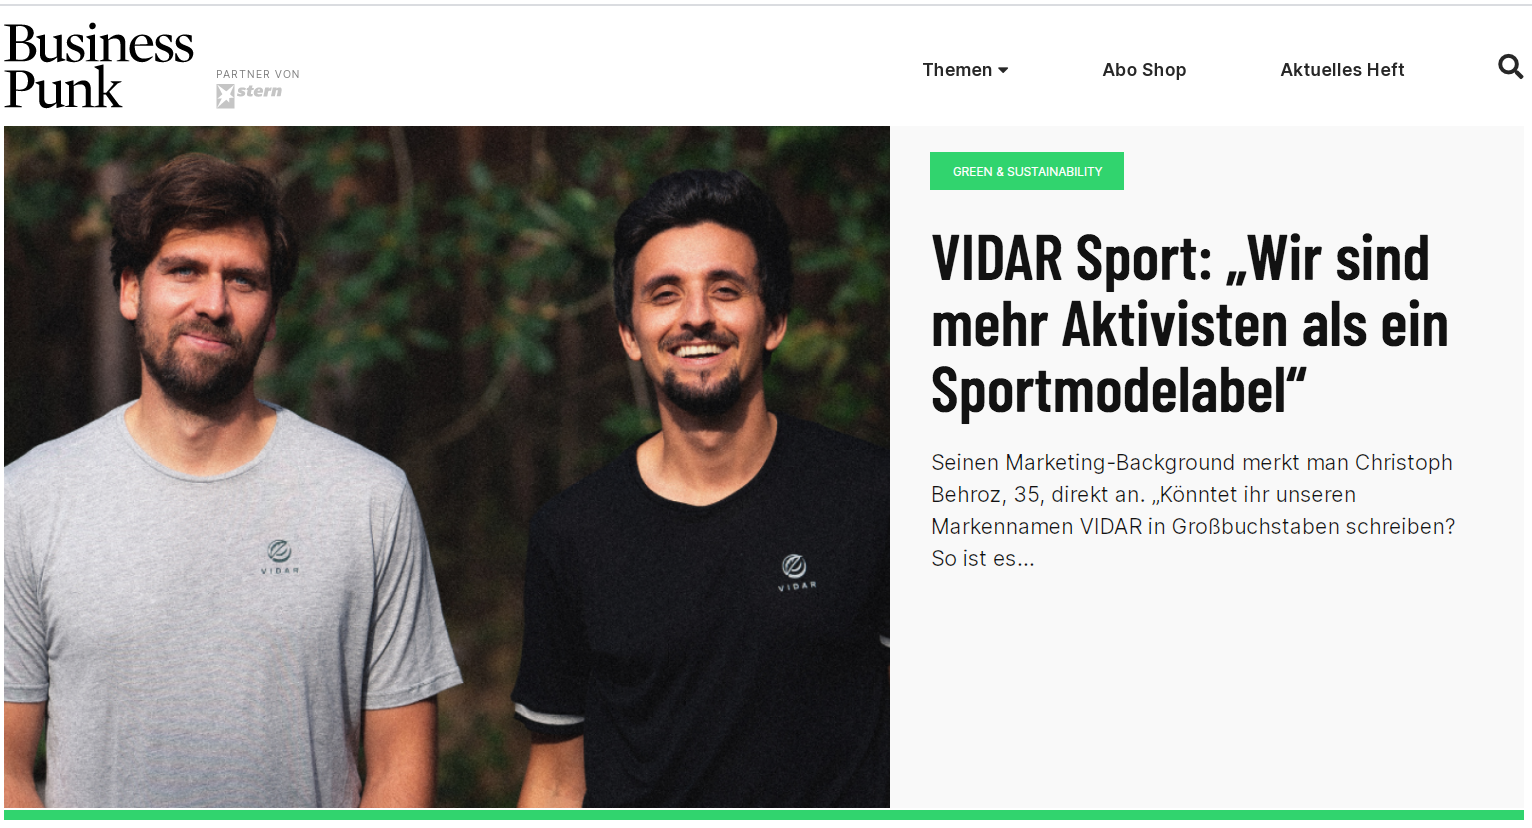 VIDAR Sport: „Wir sind mehr Aktivisten als ein Sportmodelabel“